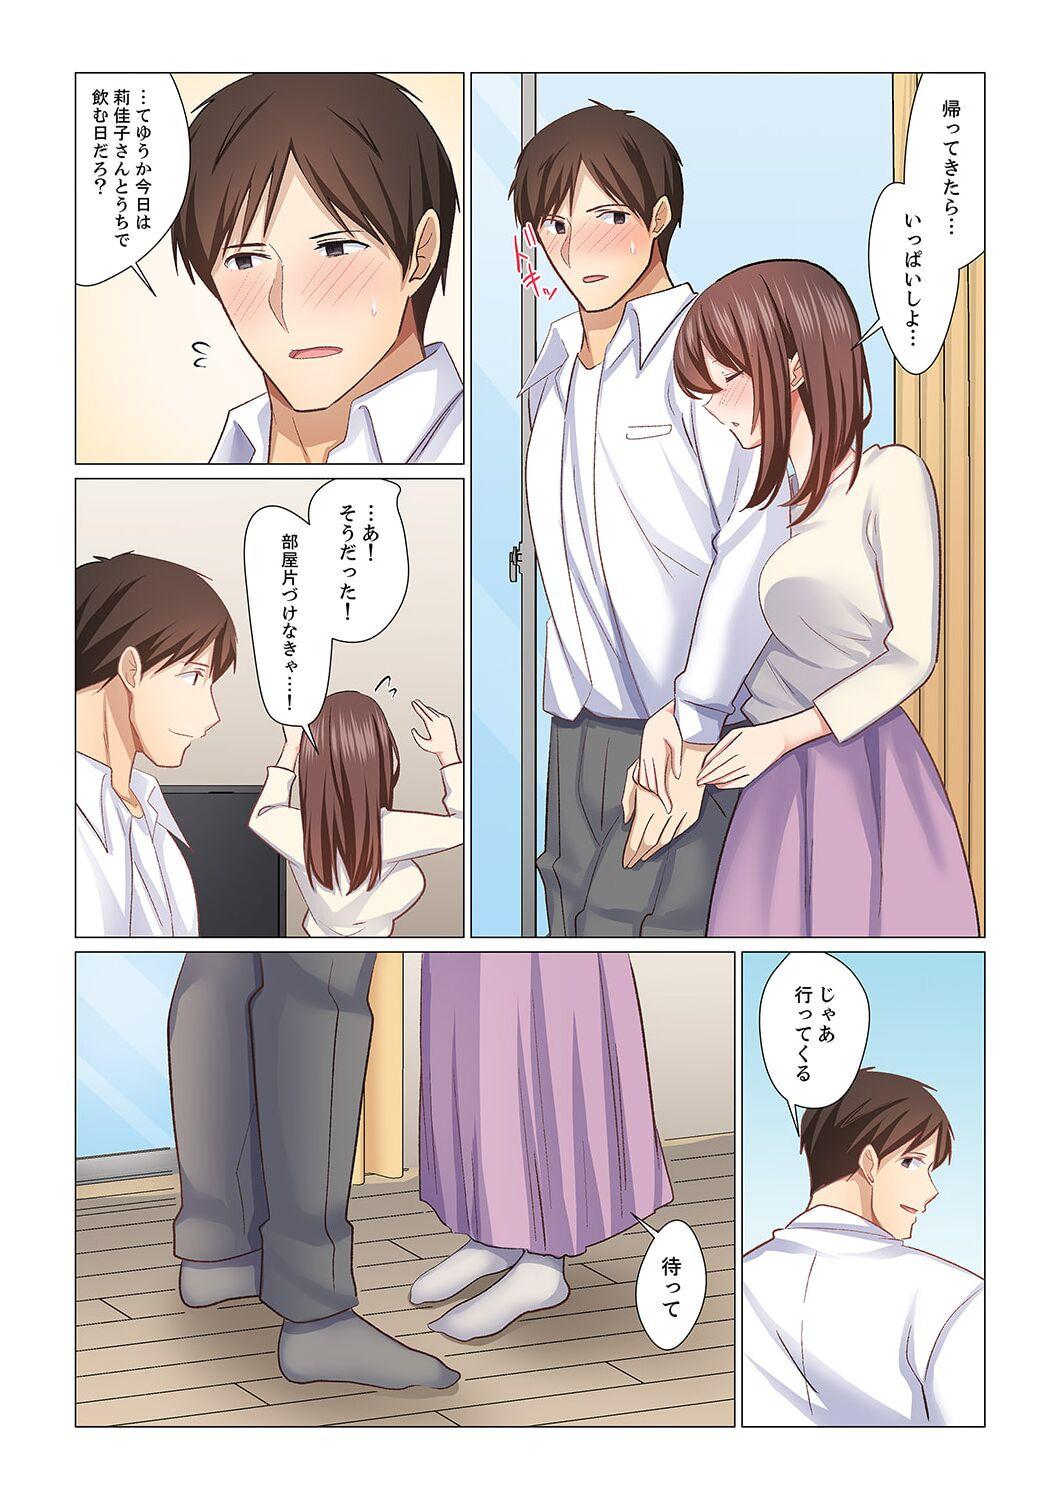 Anime 16 Sai ni Natta Tsuma 20 Dotado - Page 5